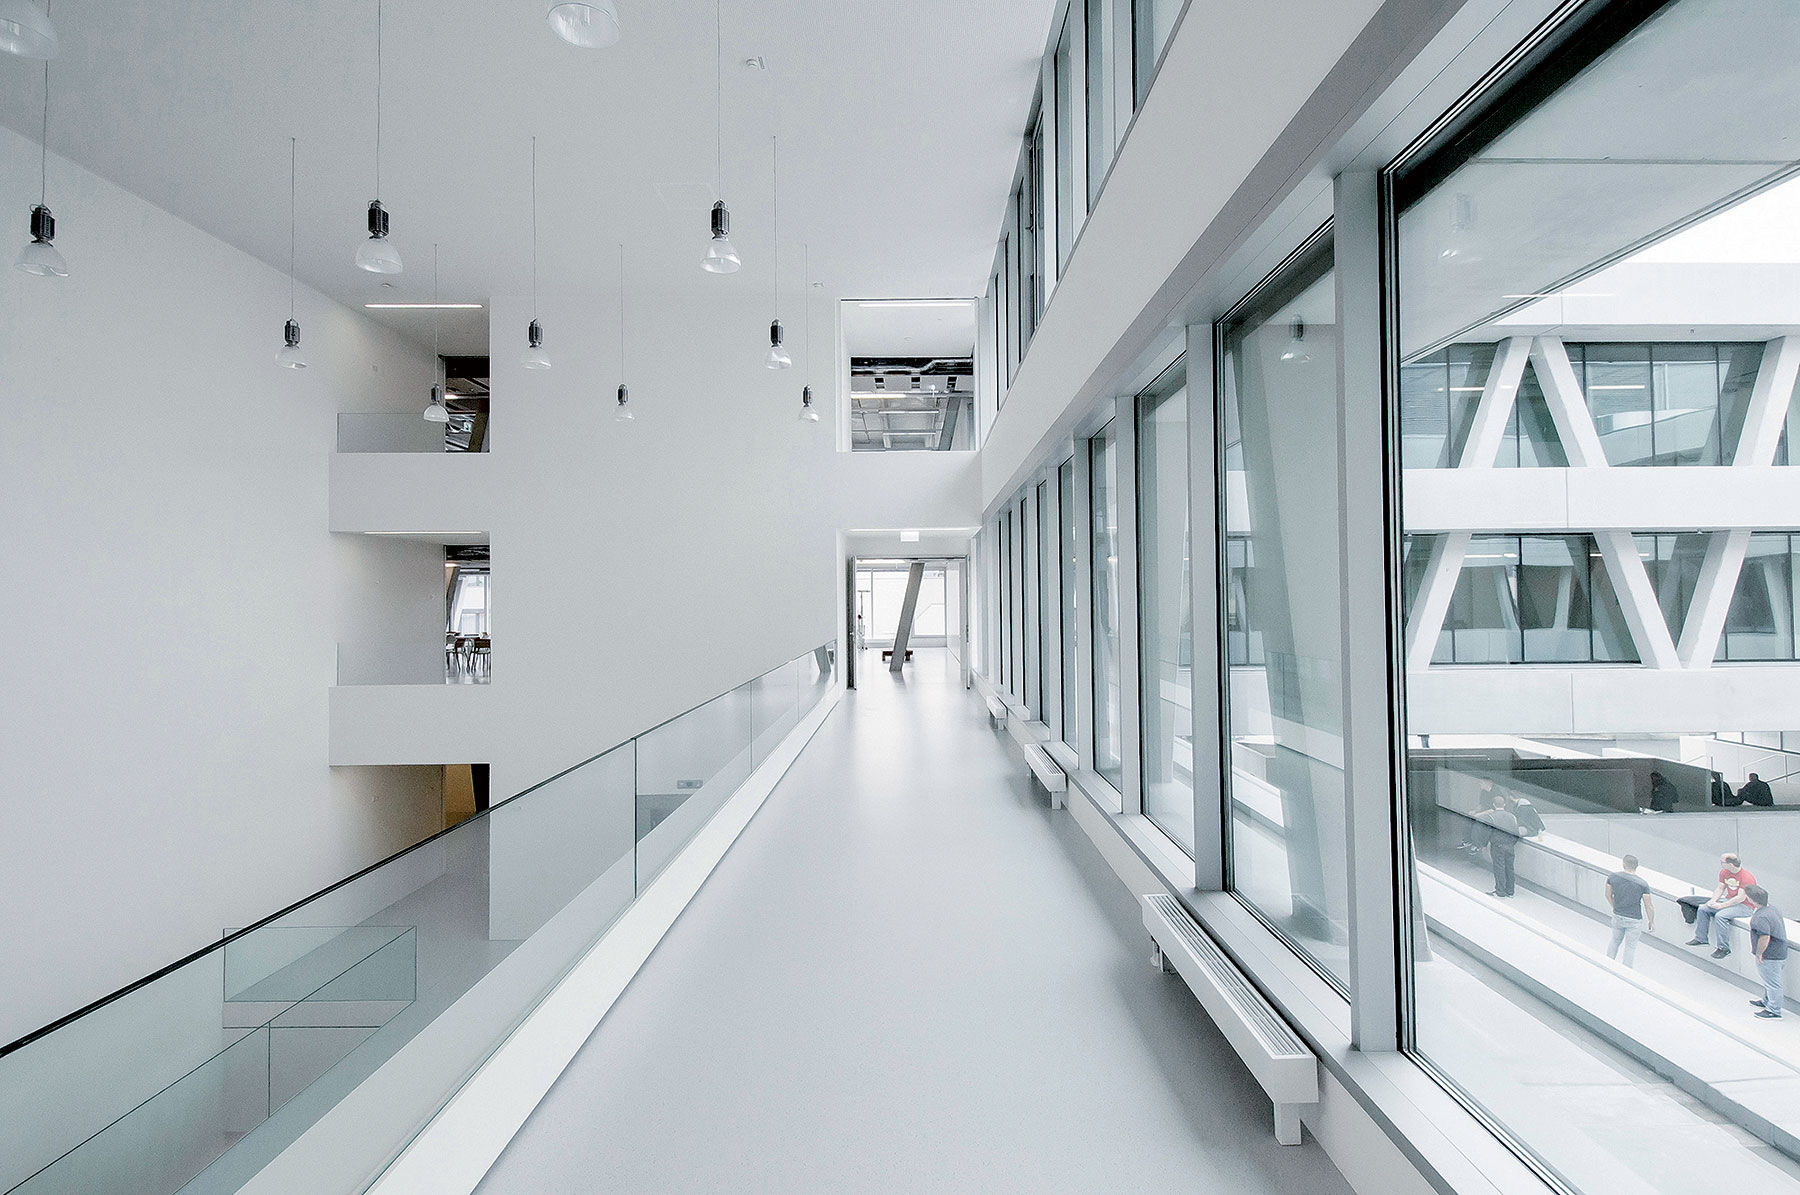 Centrum technológie a dizajnu v St. Pöltene má za sebou vyše pol roka prevádzky, ktorá potvrdila jeho architektonický koncept. Presvedčivo komunikuje navonok a zároveň adekvátne vytvára priestor pre idey a projekty budúcnosti, ktoré sa rodia v jeho vnútri.